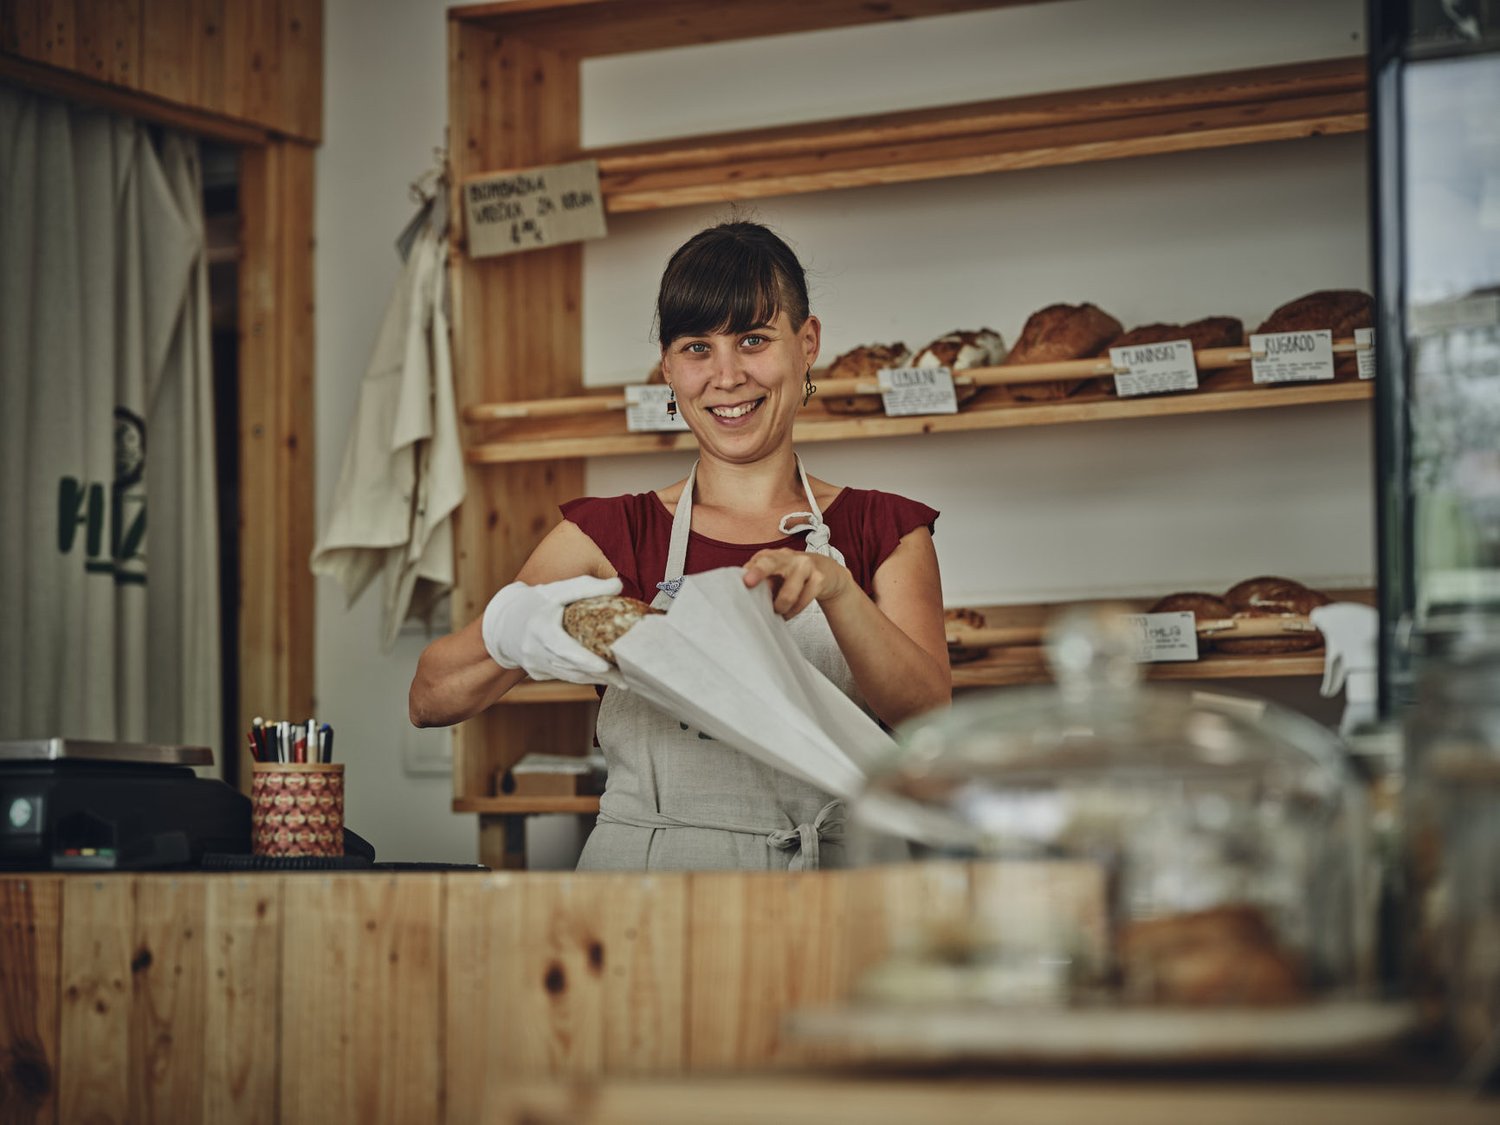 Rifuzl, trgovina brez plastične embalaže v Ljubljani – prodajalka daje kruh v papirnato vrečko